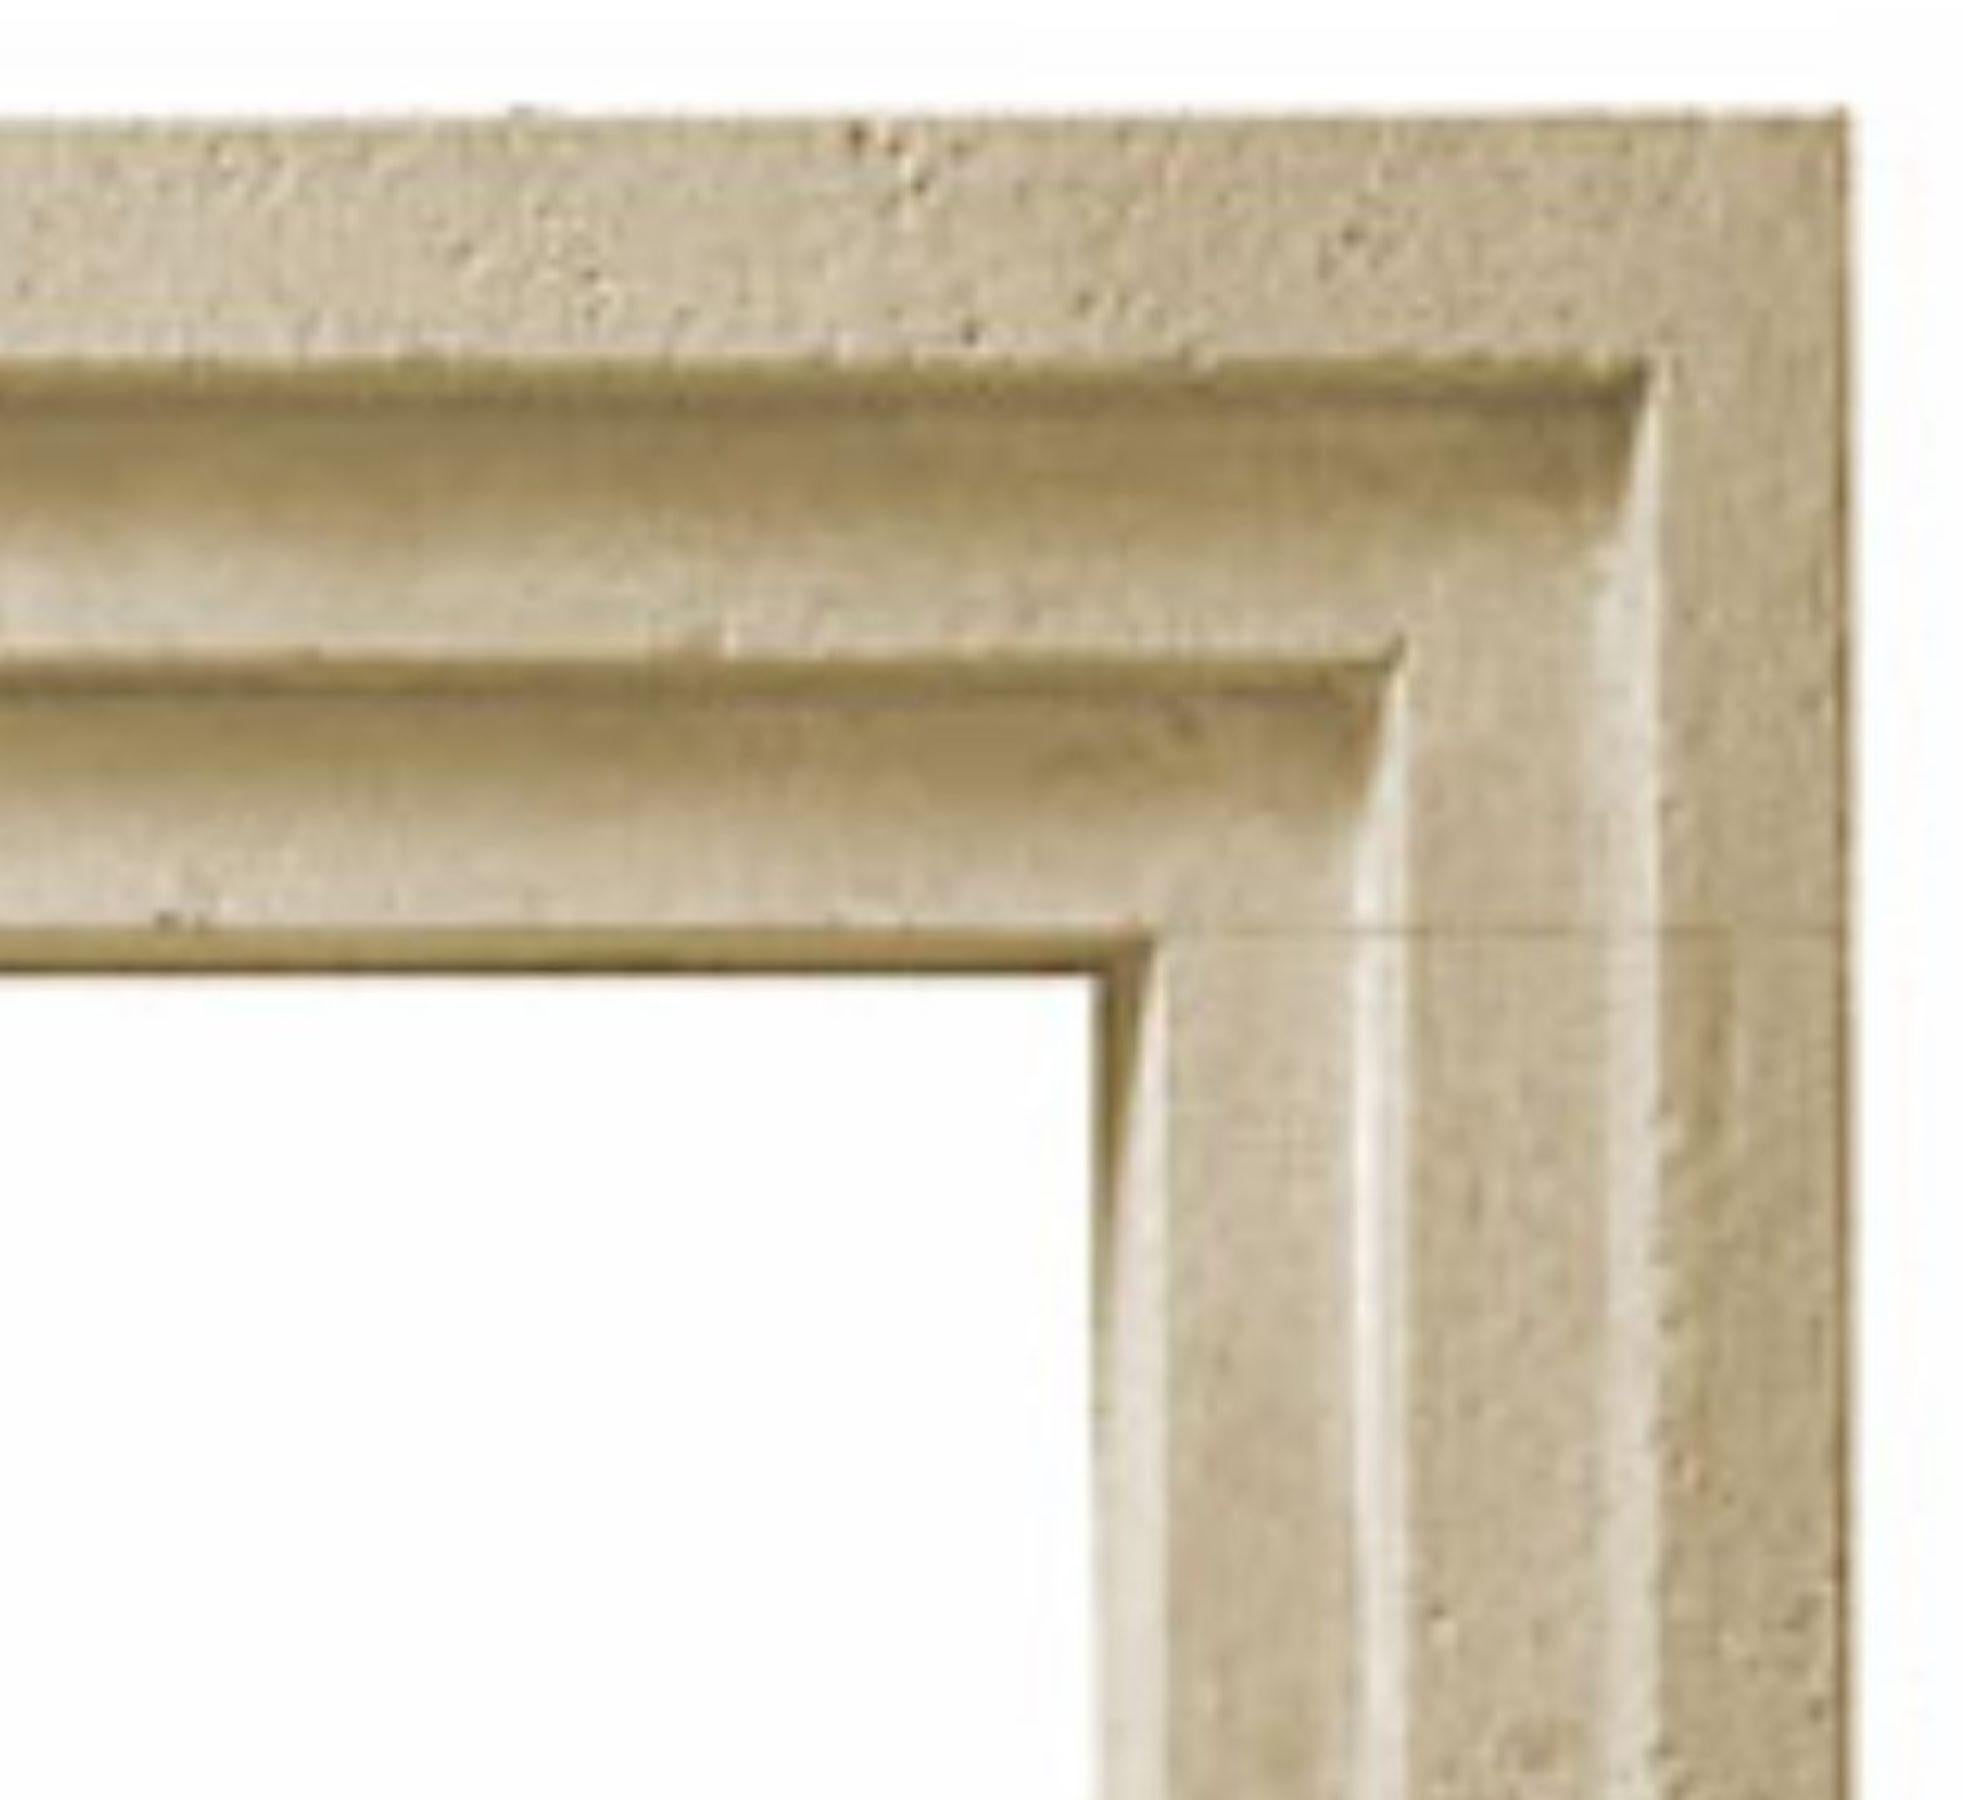 Der Tri-Minimalist ist ein moderner Steinkamin mit einem klassischen, abgestuften Art-Déco-Profil. Das Mauerwerk ist dreifach gestuft, daher der Name dieses Kamins.  Jede Stufe ist über die Schenkel und den Sturz gleich breit. Mit seinen einfachen